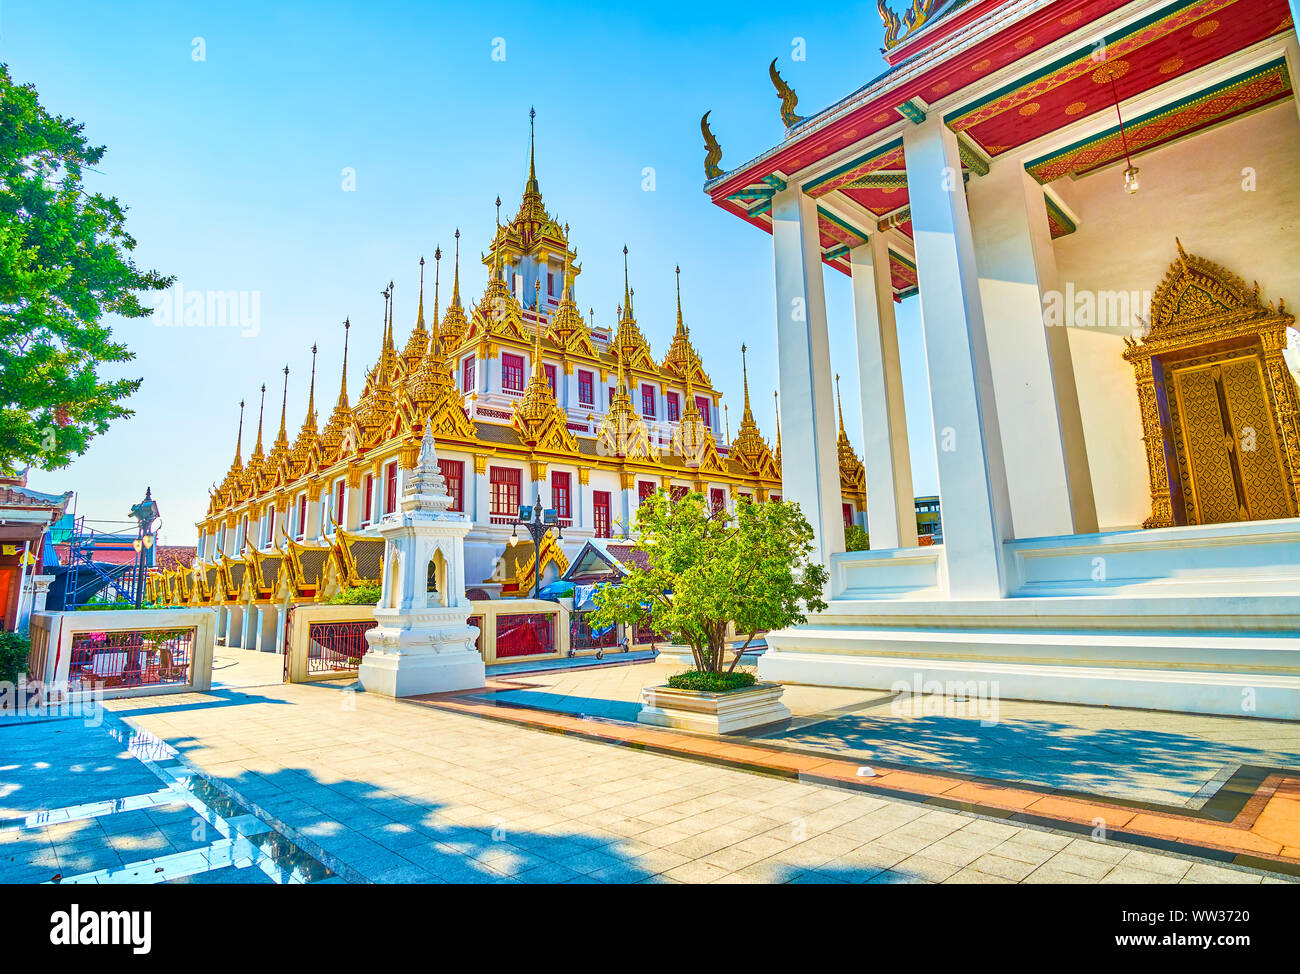 Le Loha Prasat temple unique avec de nombreuses flèches d'or sur trois différents niveaux, est l'autel central de Wat Ratchanatdaram, complexe Bangk Banque D'Images